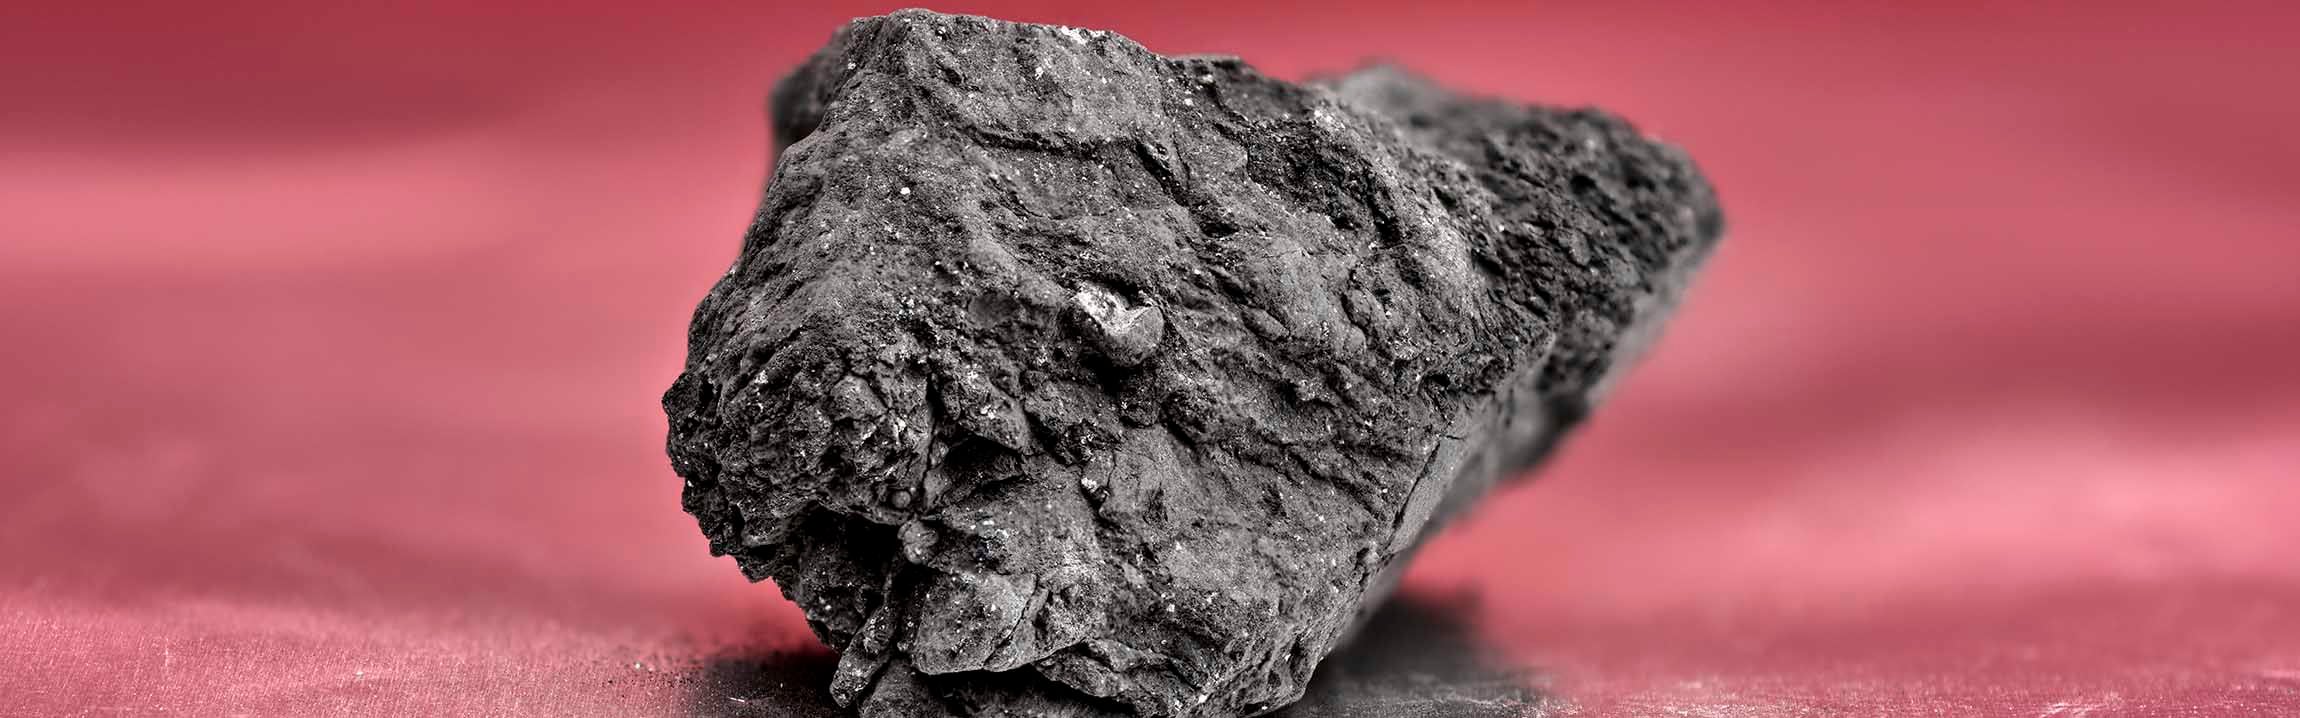 Después de viajar por el sistema solar durante más de cuatro mil millones de años, en febrero un meteorito aterrizó en un camino de entrada en Gloucestershire. Imagen © The Trustees of the Natural History Museum, Londres